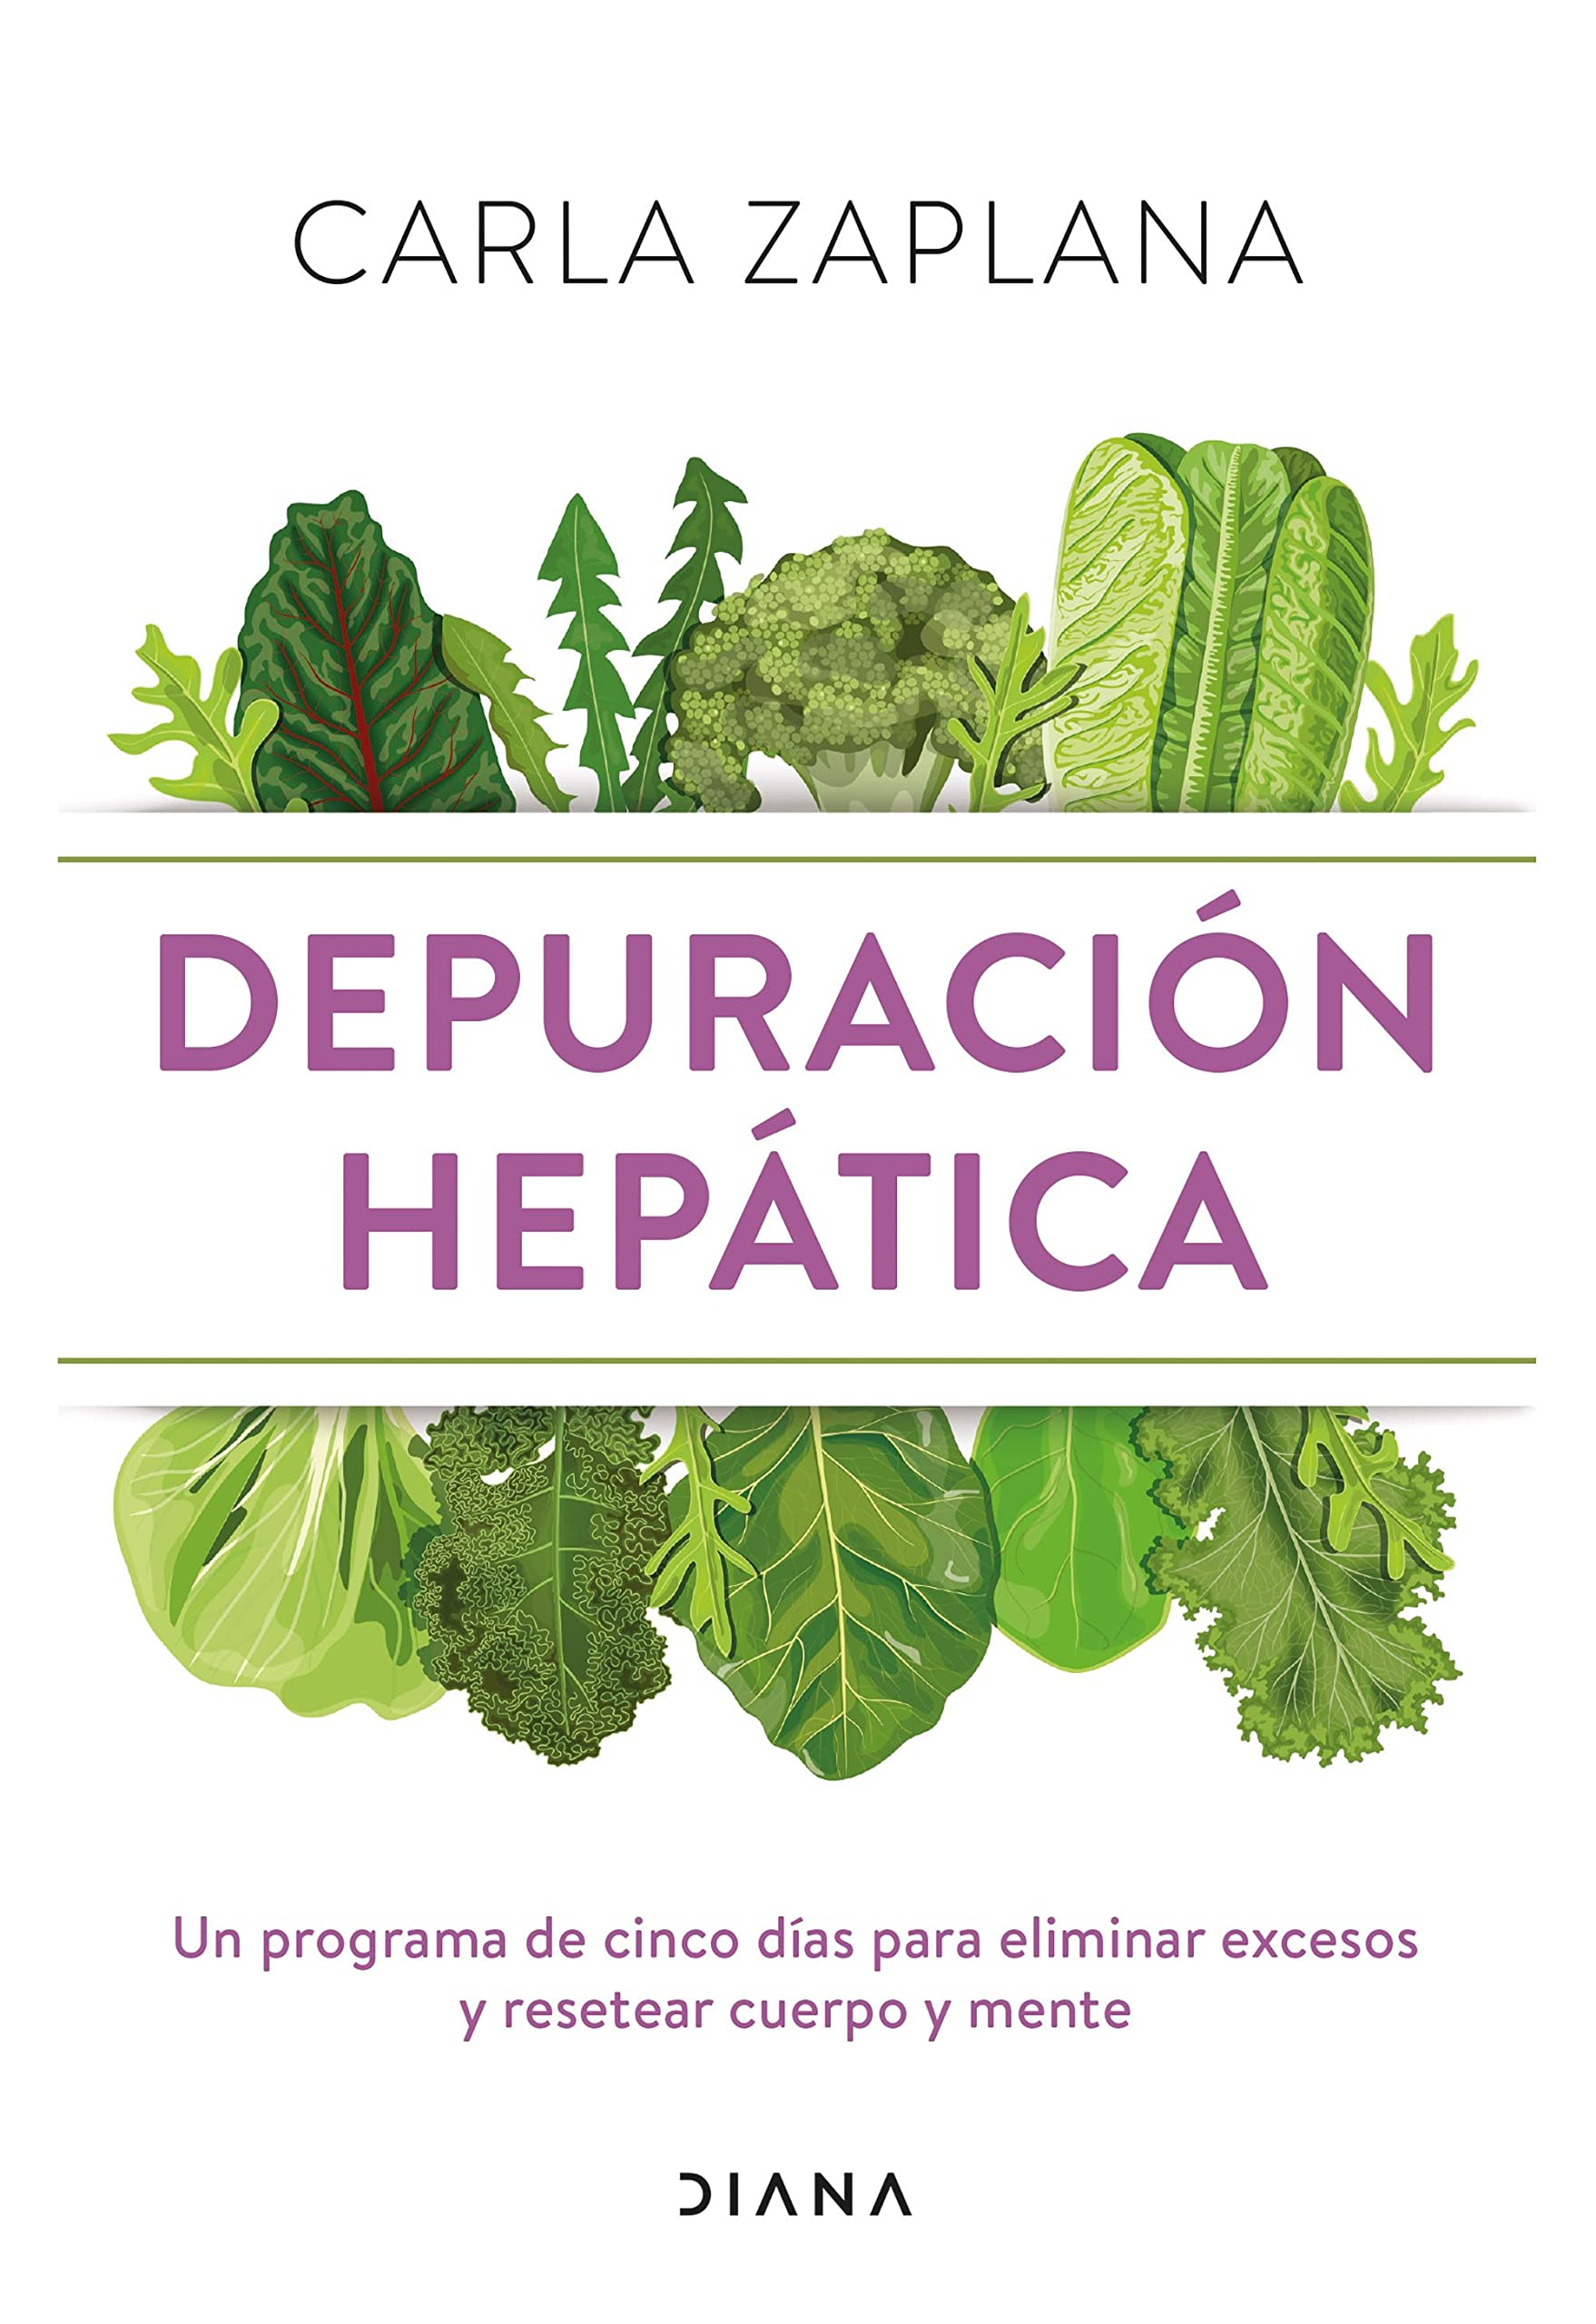 Depuración hepática, que nos cuenta el libro de Carla Zaplana